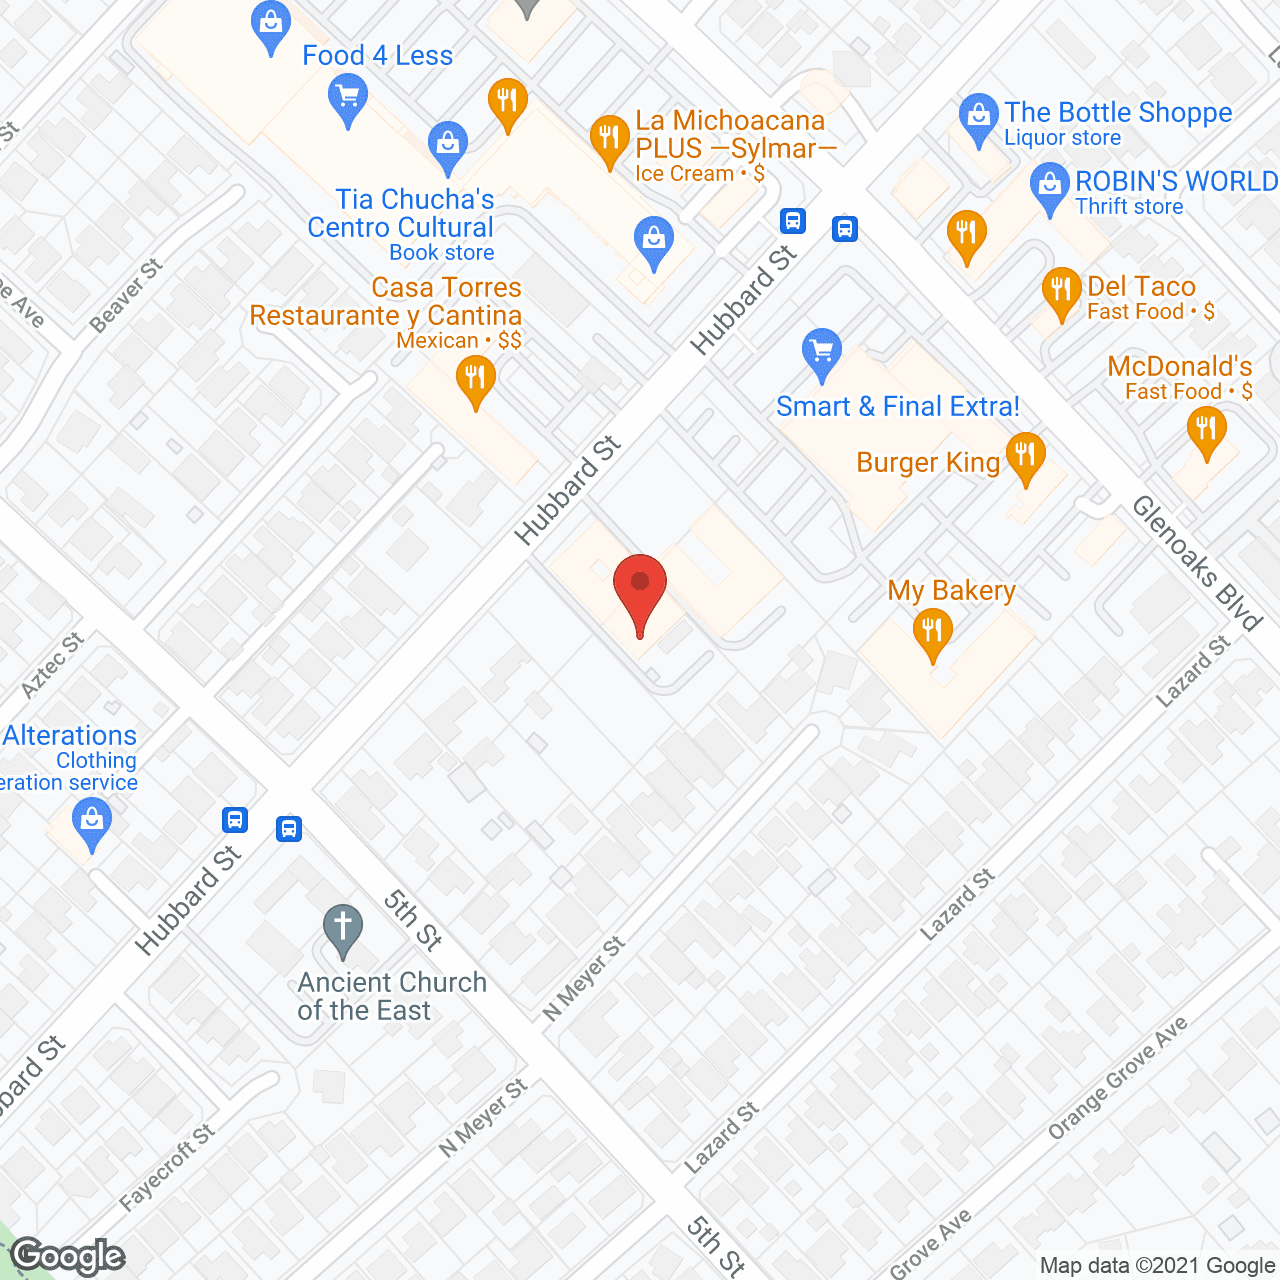 Abbey Road Villa in google map